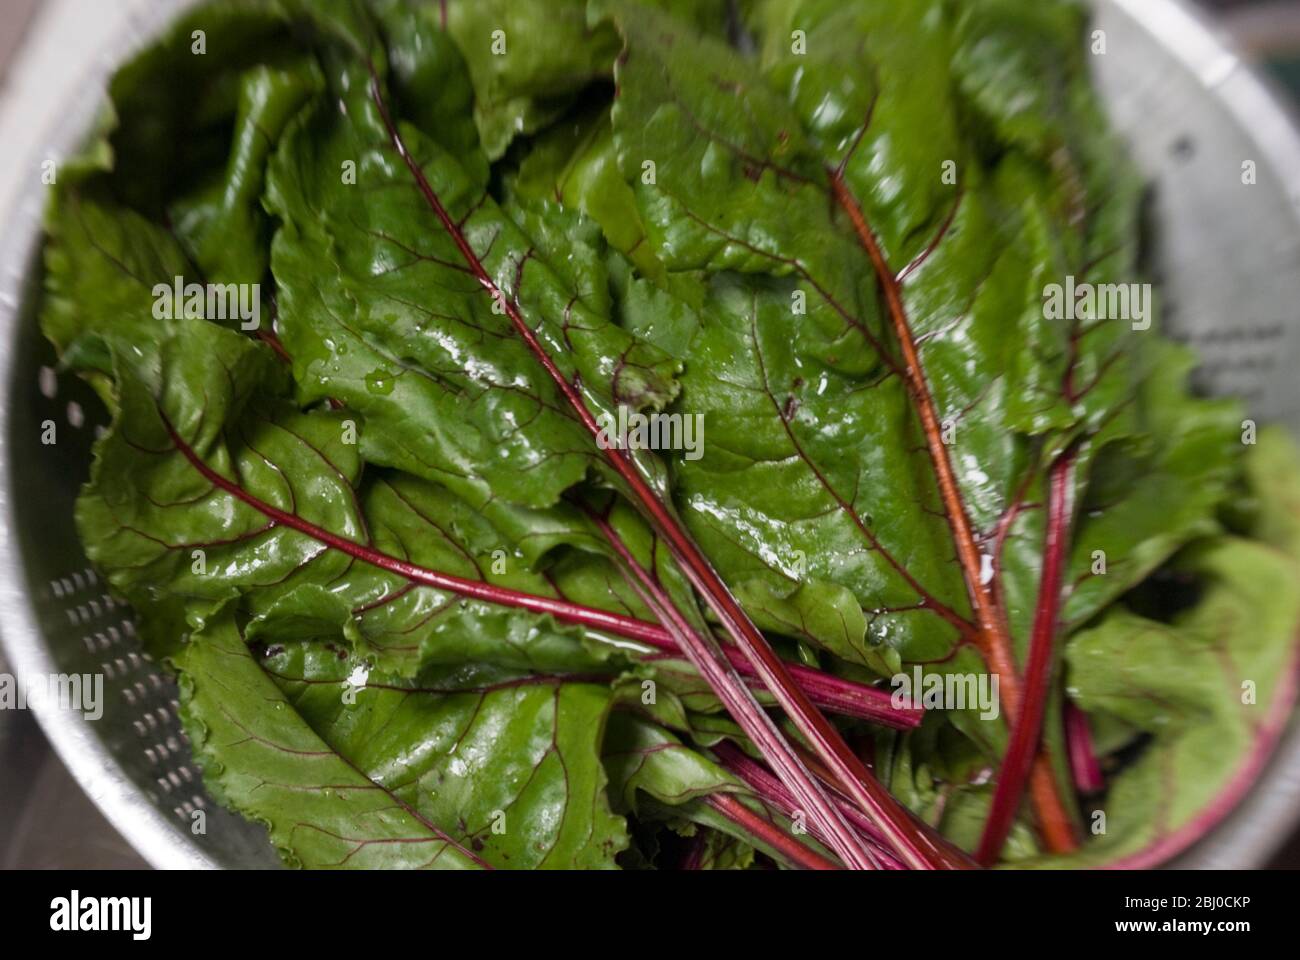 Las hojas de remolacha recién excavada utilizada como una deliciosa verdura de hoja verde - Foto de stock